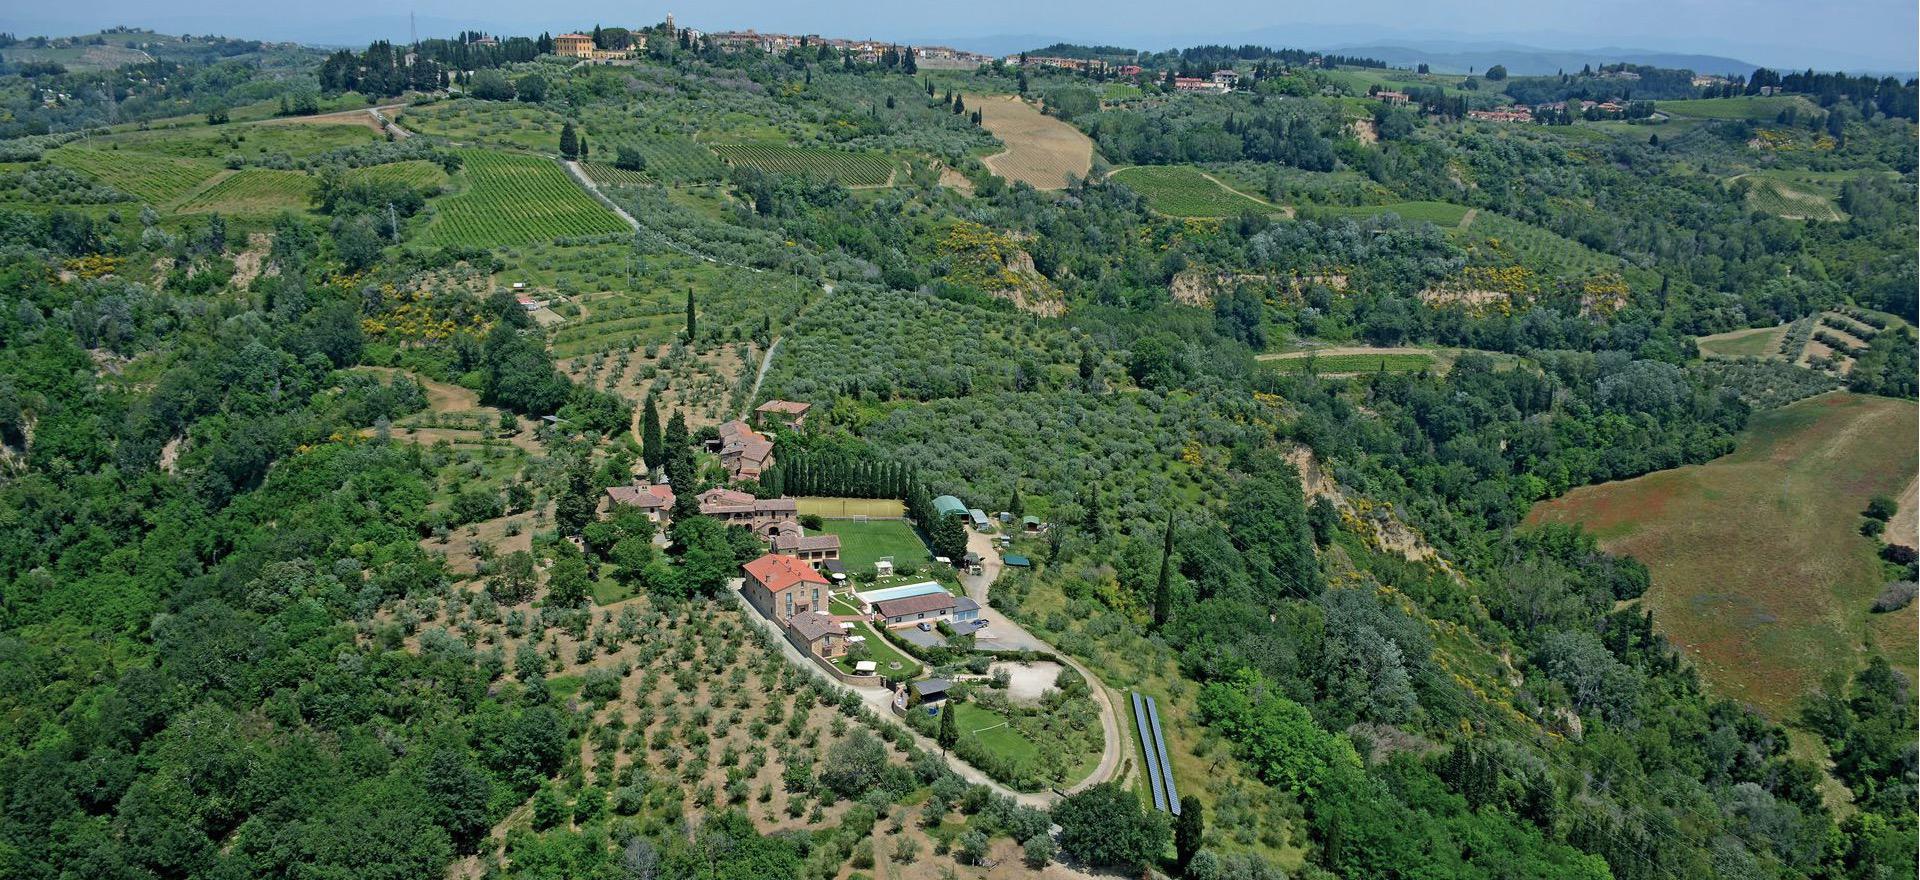 Leuke wijnboerderij voor families in Toscane